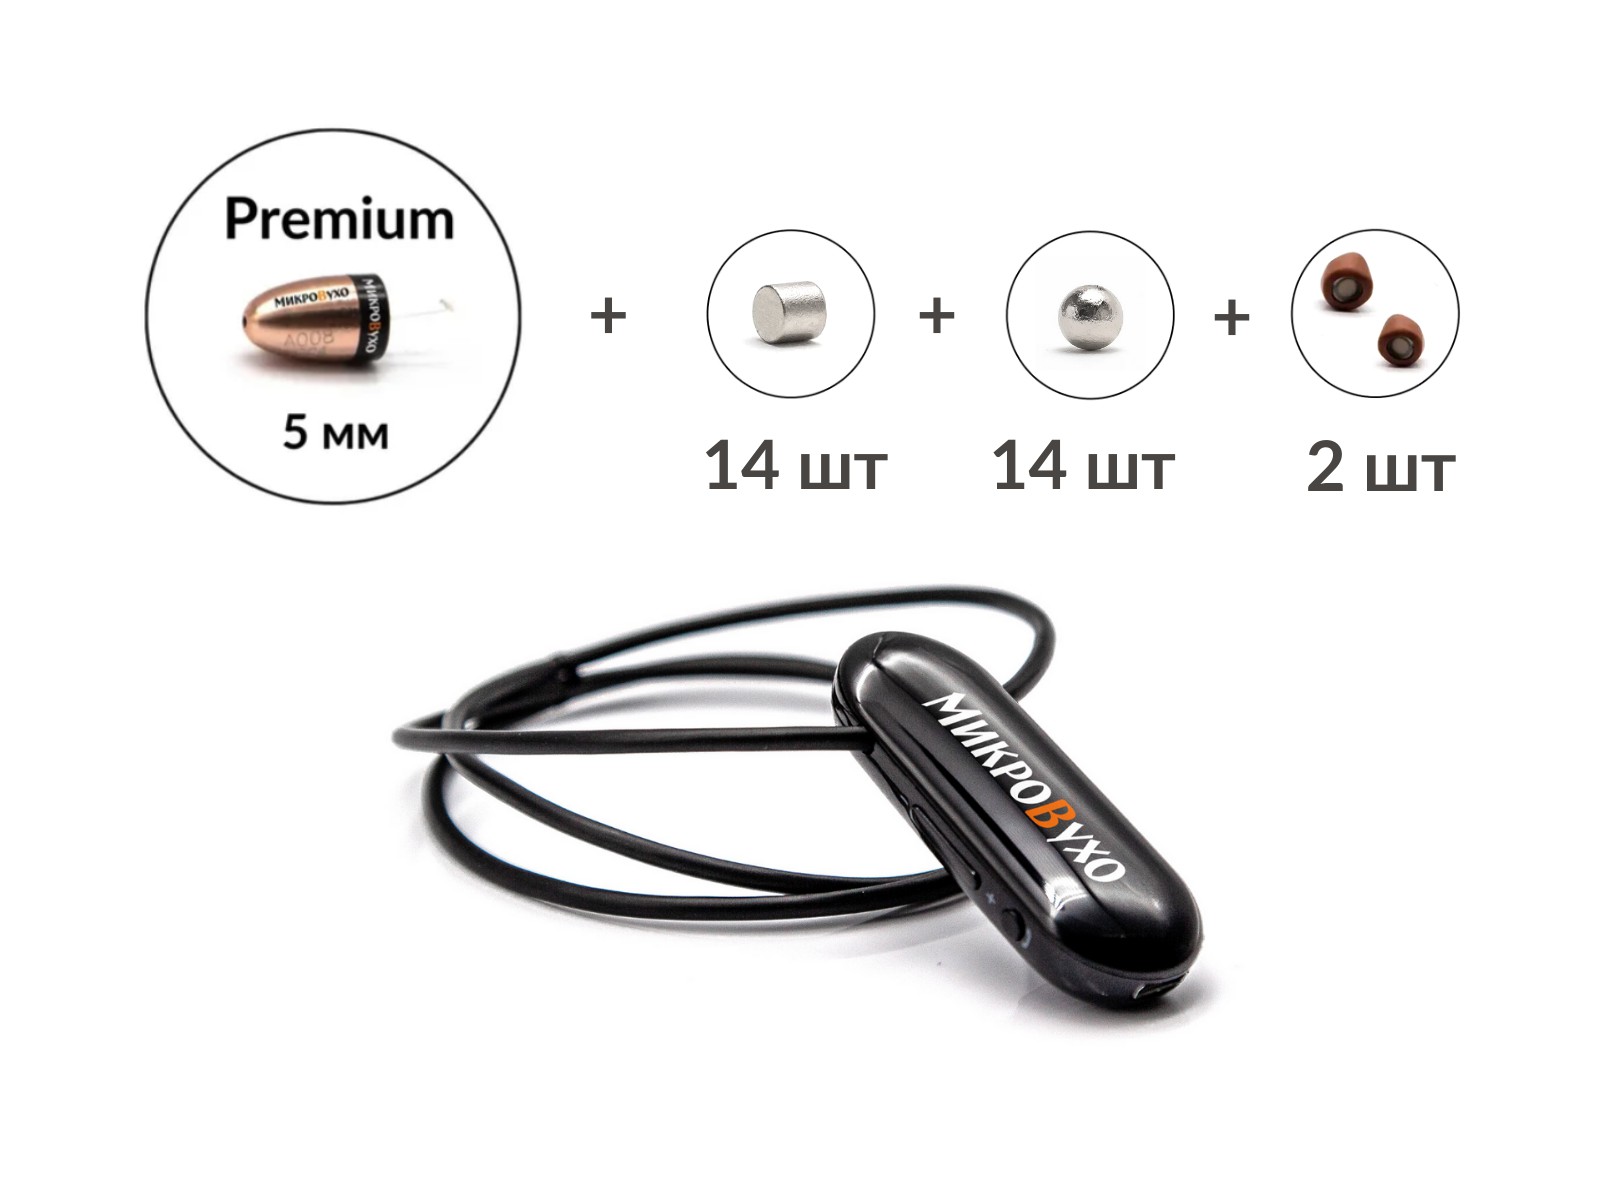 Универсальная гарнитура Bluetooth Pro с капсулой Premium и магнитами 2 мм 1